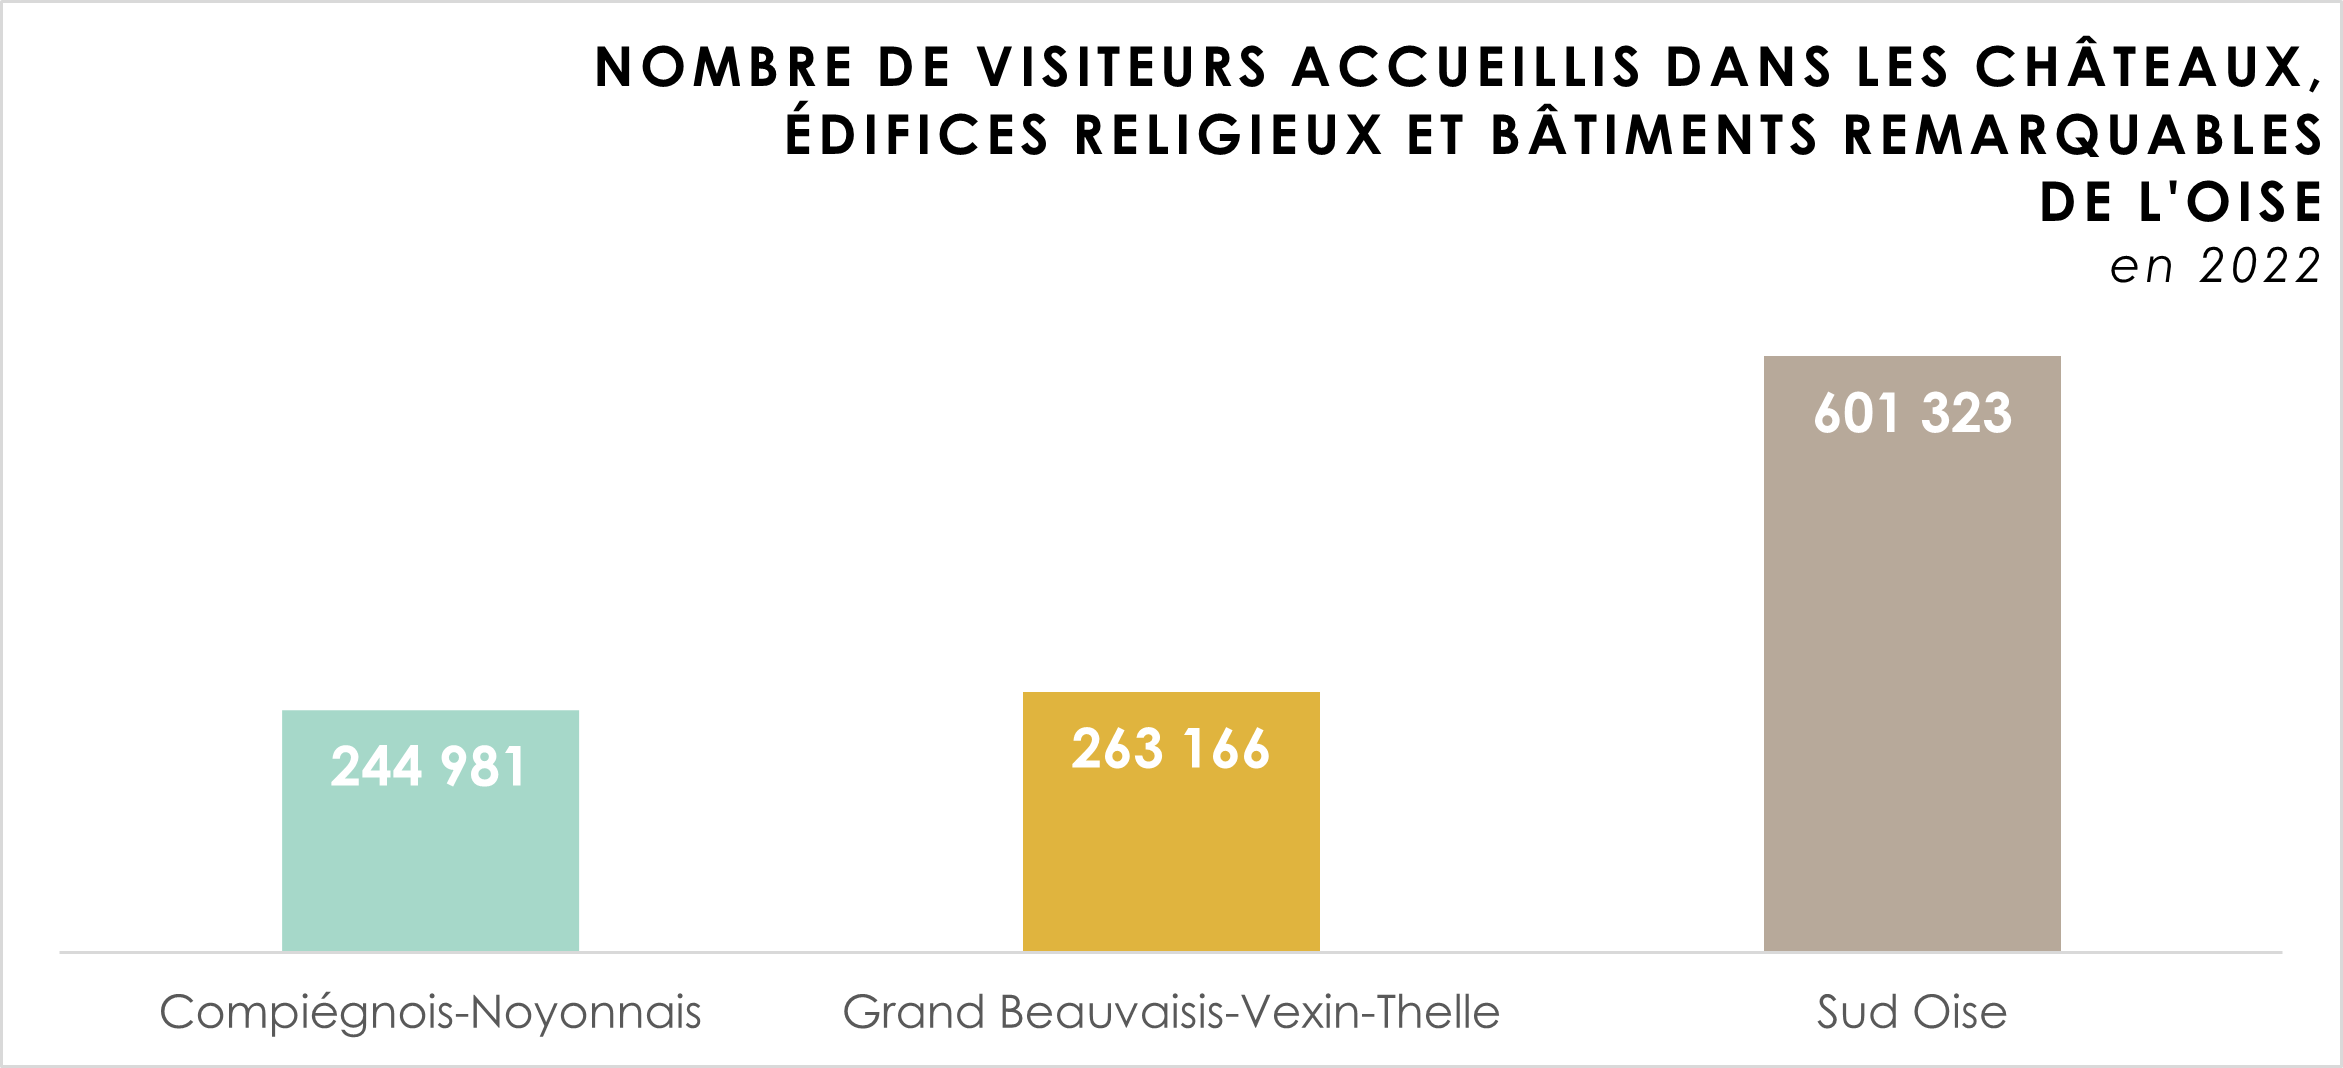 evolution-nombre-visiteurs-chateaux-oise-par-bassin-2022